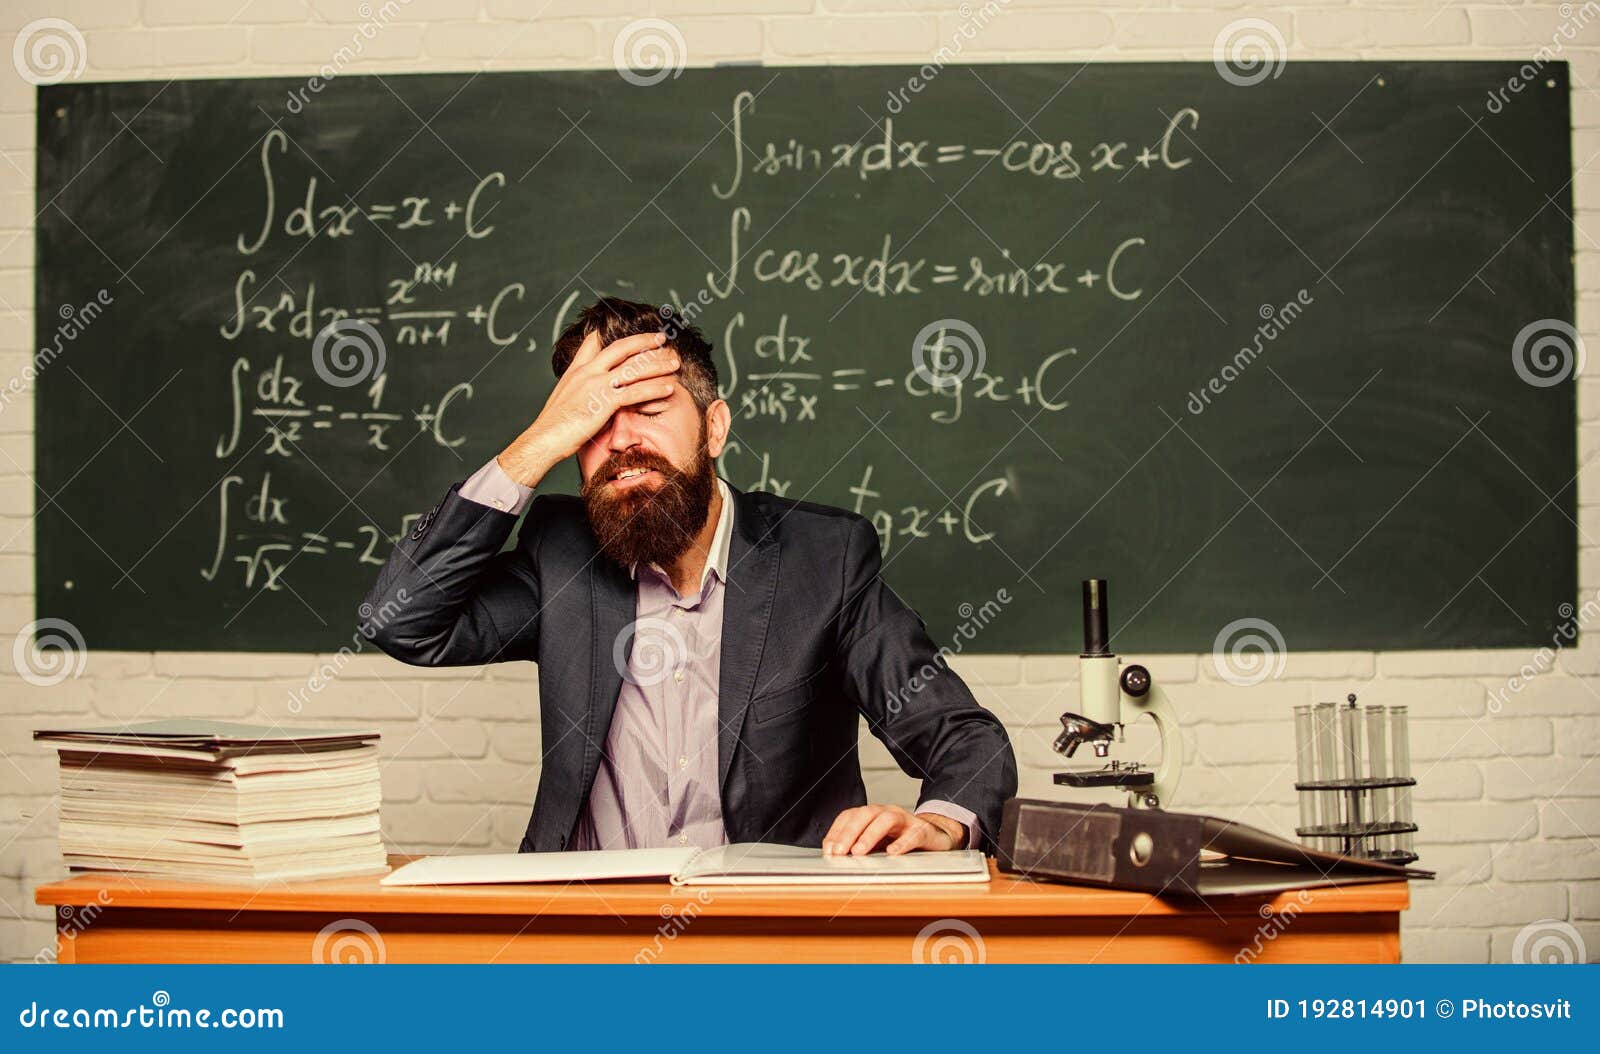 Учитель устал. Учитель в отчаянии. Photo of dumb teachers.